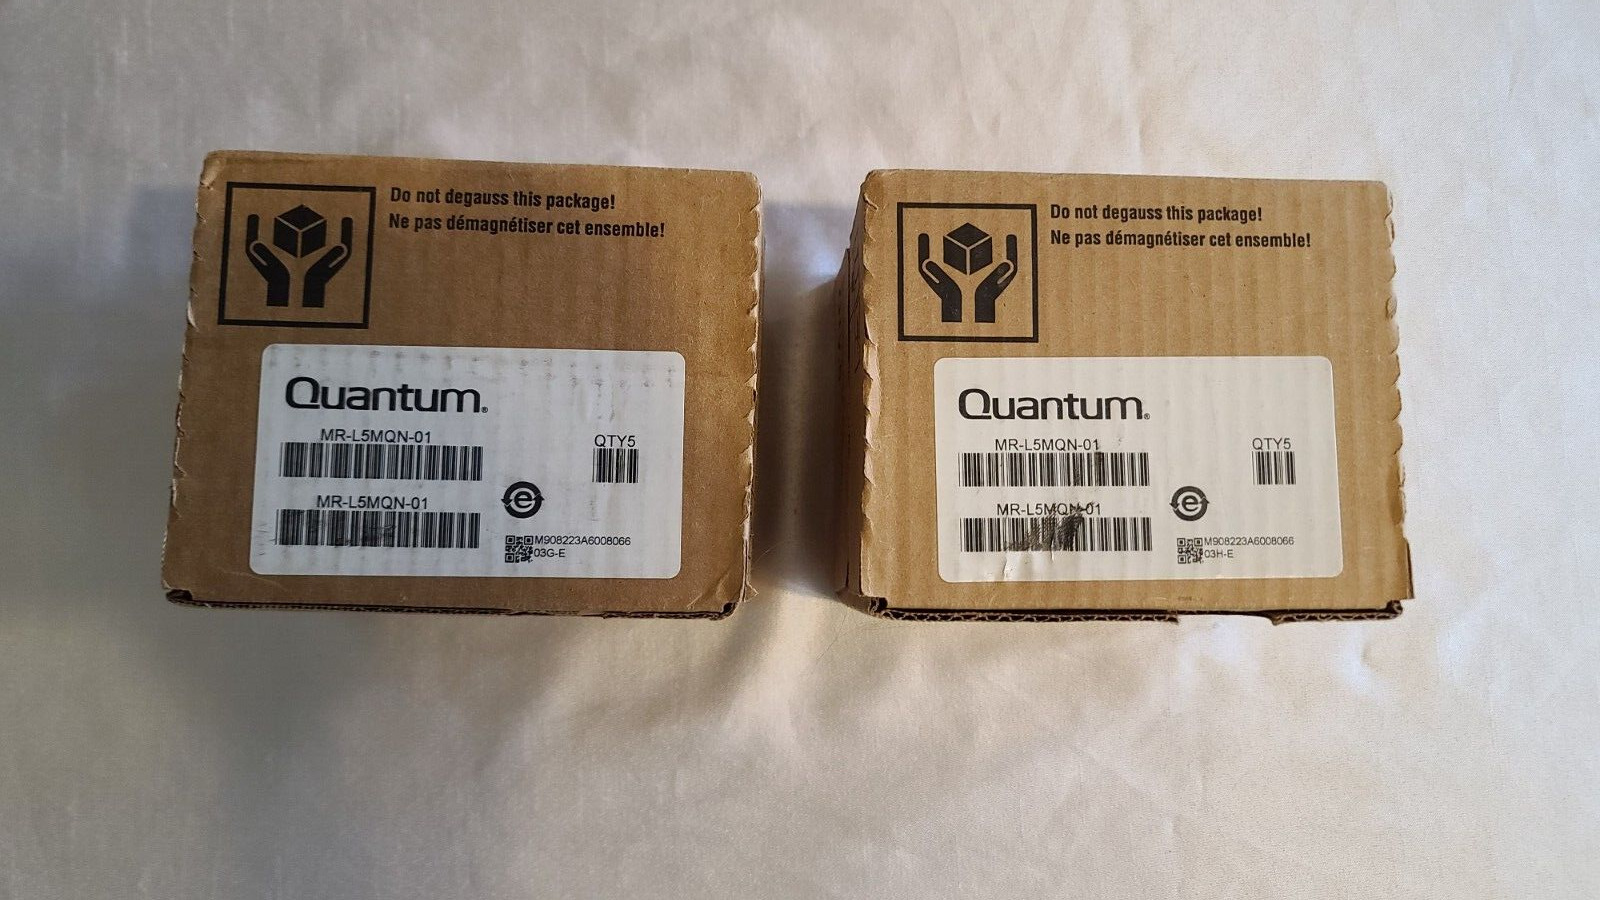 2 x 5-PACK Quantum LTO-5 Tape MR-L5MQN-01 Data Storage Cartridges - New In Box